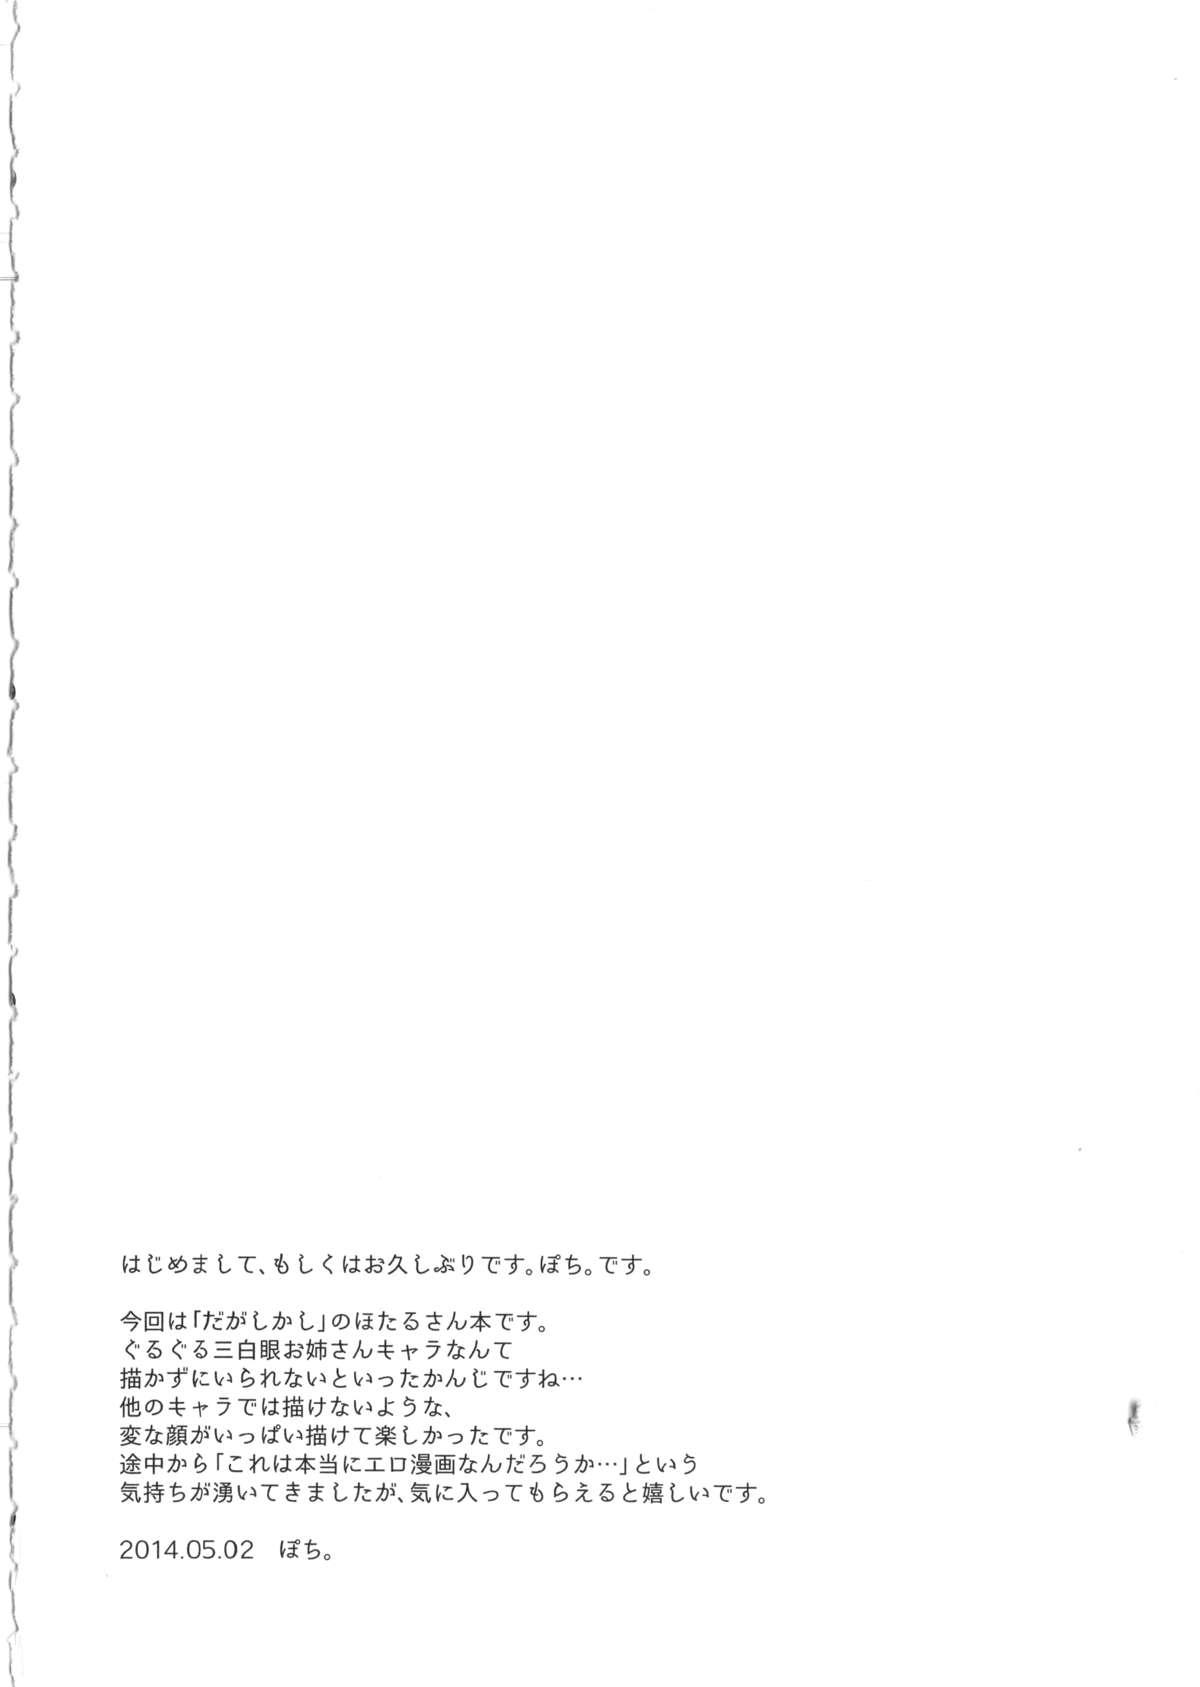 18yearsold Otona no dagashi - Dagashi kashi Plug - Page 3